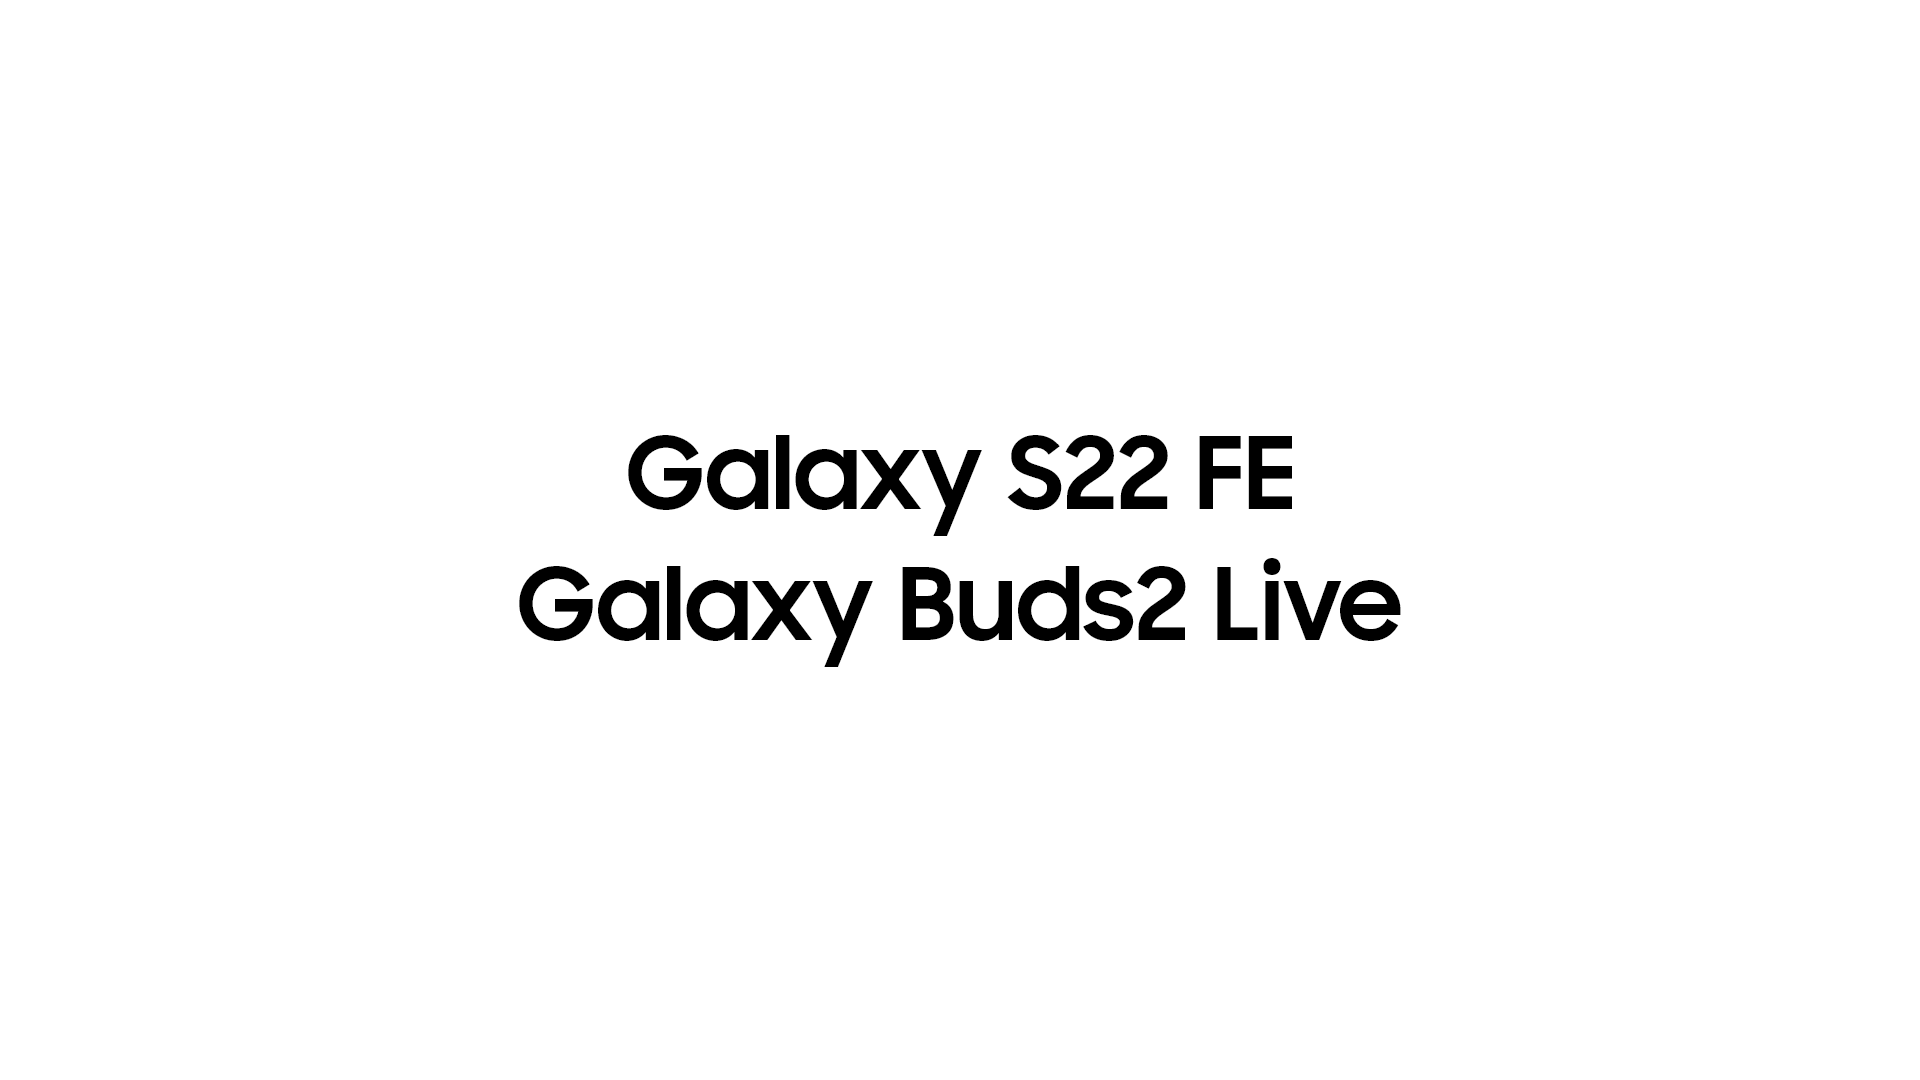 Galaxy Buds Live baru diharapkan bergabung dengan dugaan Galaxy S22 FE pada acara peluncuran musim semi ini.  - Rahasia Samsung yang dijaga dengan baik!  Ponsel kelas flagship yang lebih murah daripada Galaxy S23 akan segera mencuri perhatian?